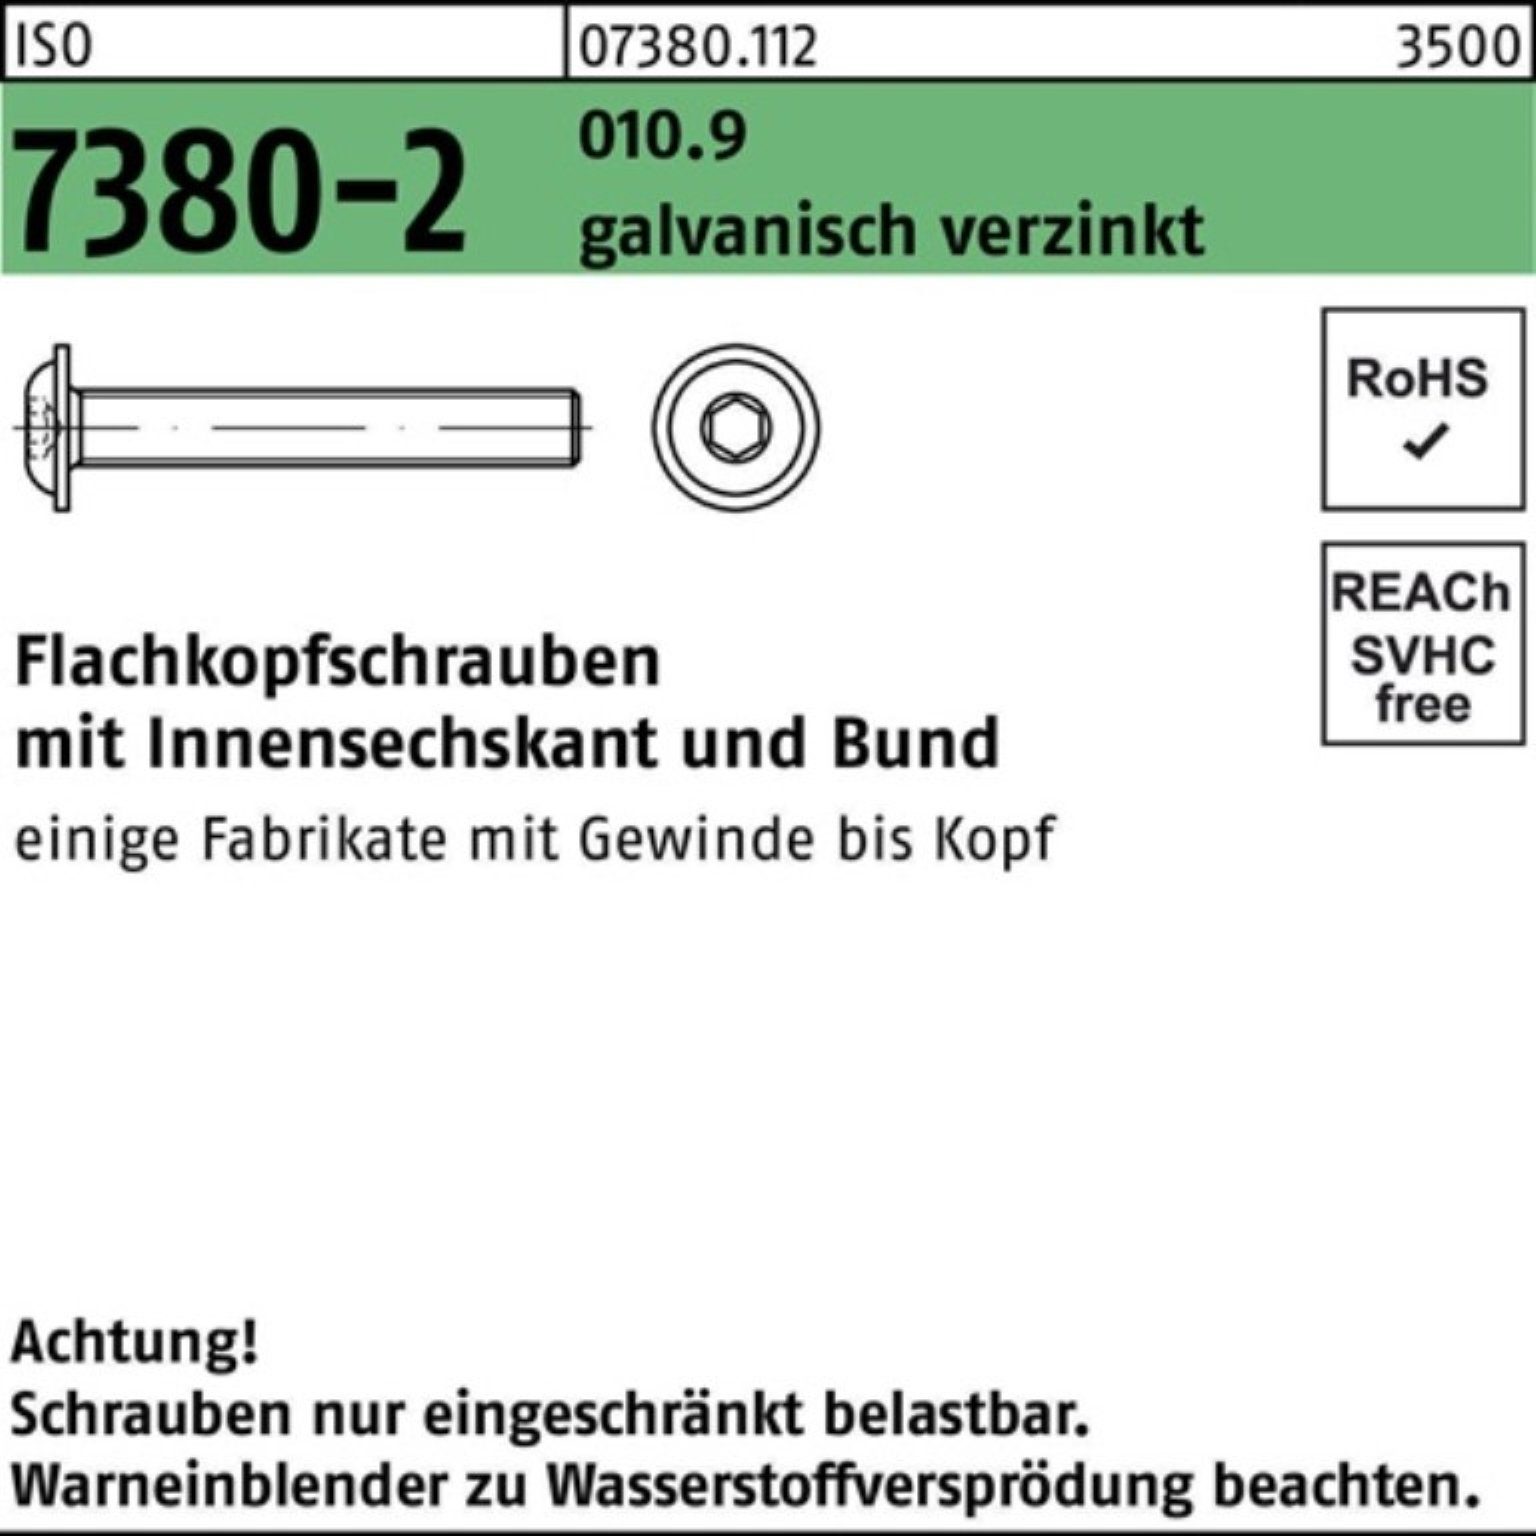 Reyher Schraube M10x20 Bund/Innen-6kt 010.9 ga 200er 7380-2 ISO Flachkopfschraube Pack